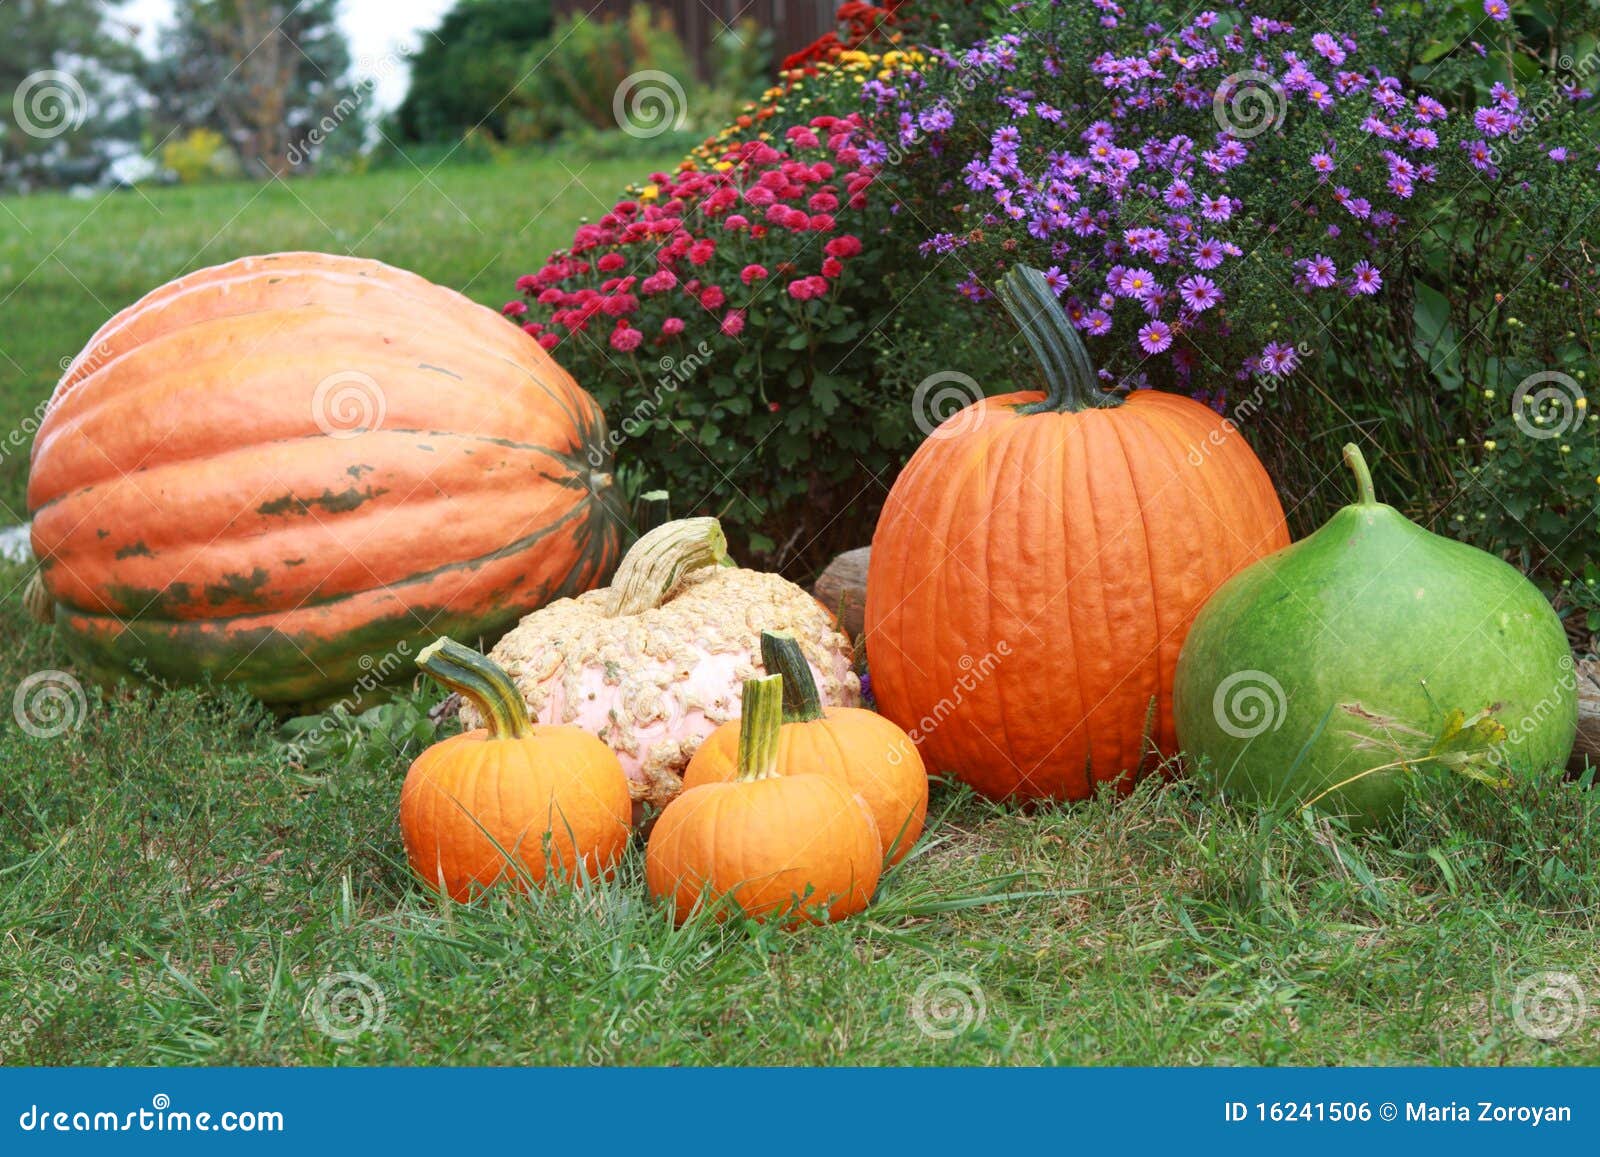 fall arrangement